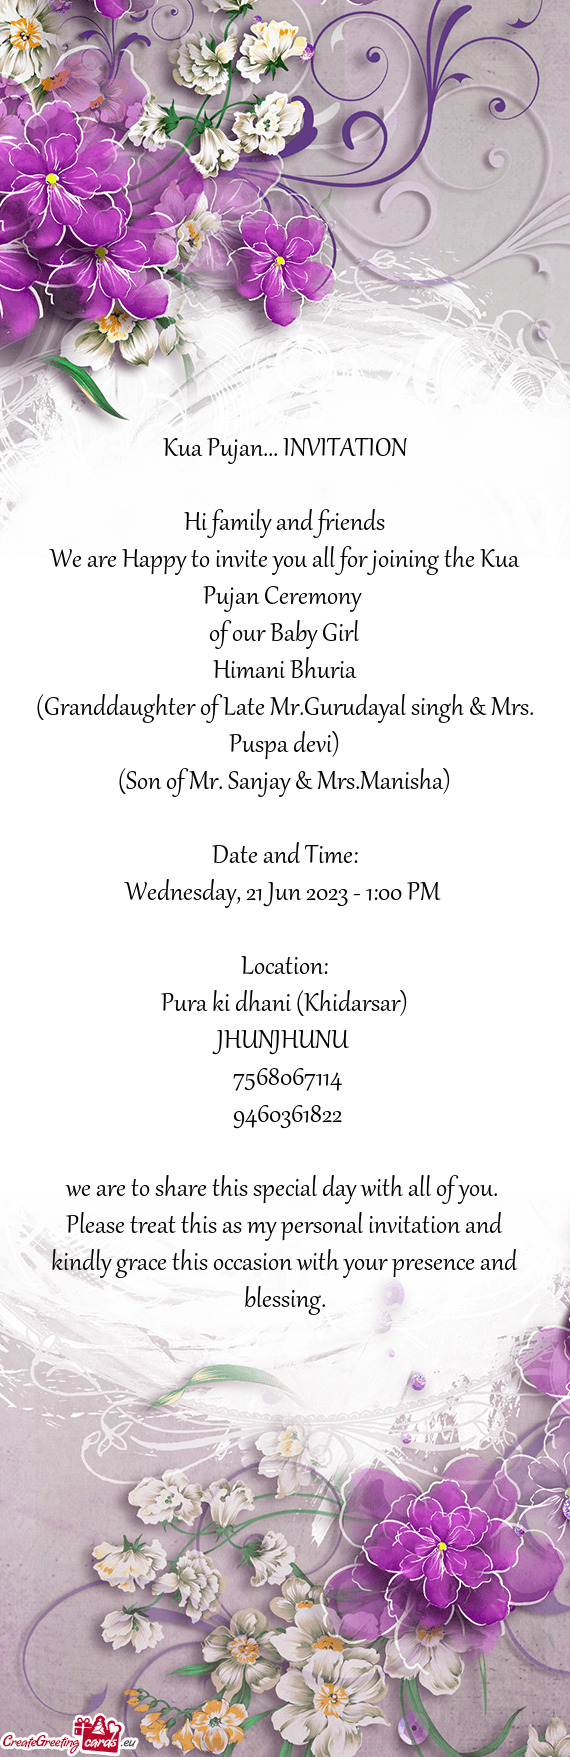 (Granddaughter of Late Mr.Gurudayal singh & Mrs. Puspa devi)